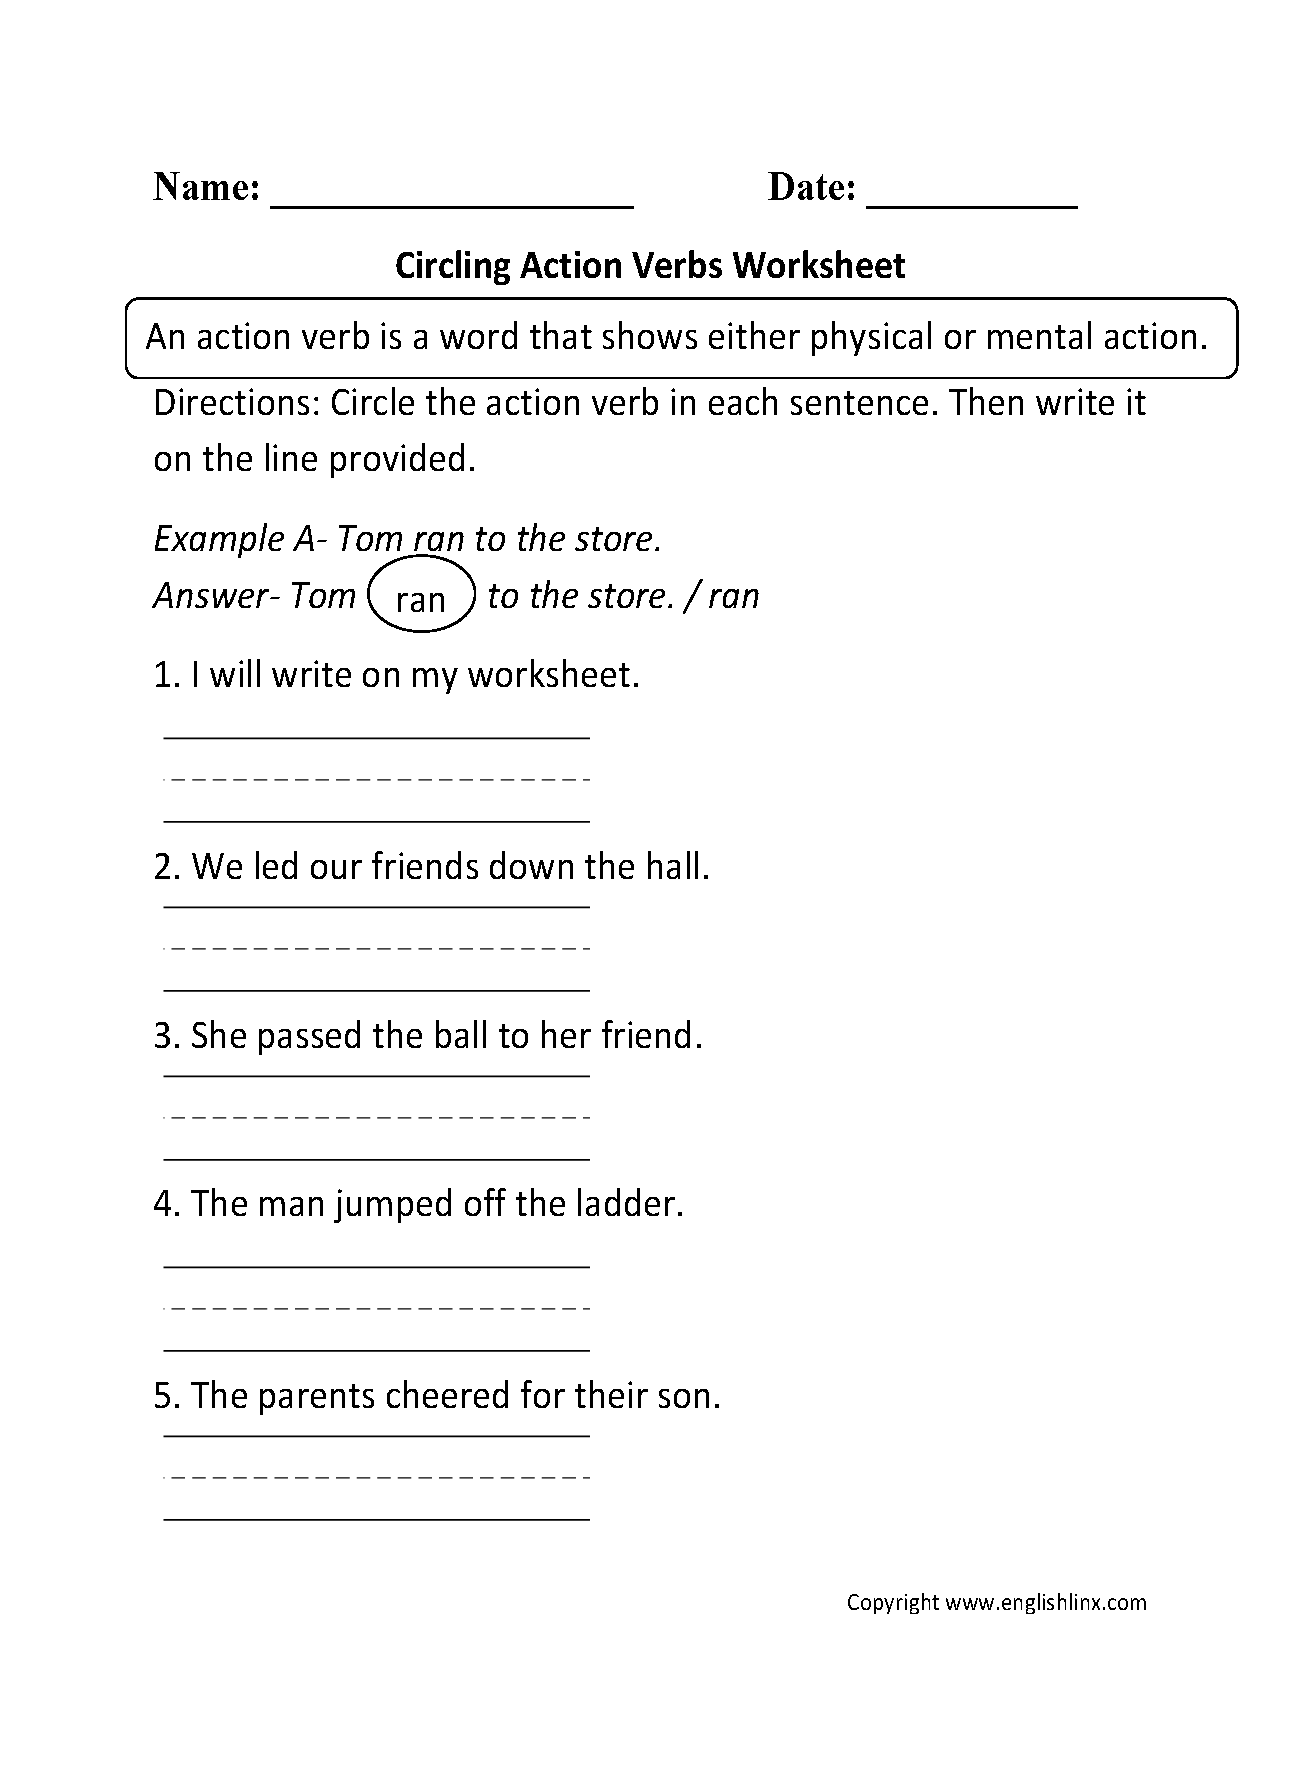 Circling Action Verbs Worksheet